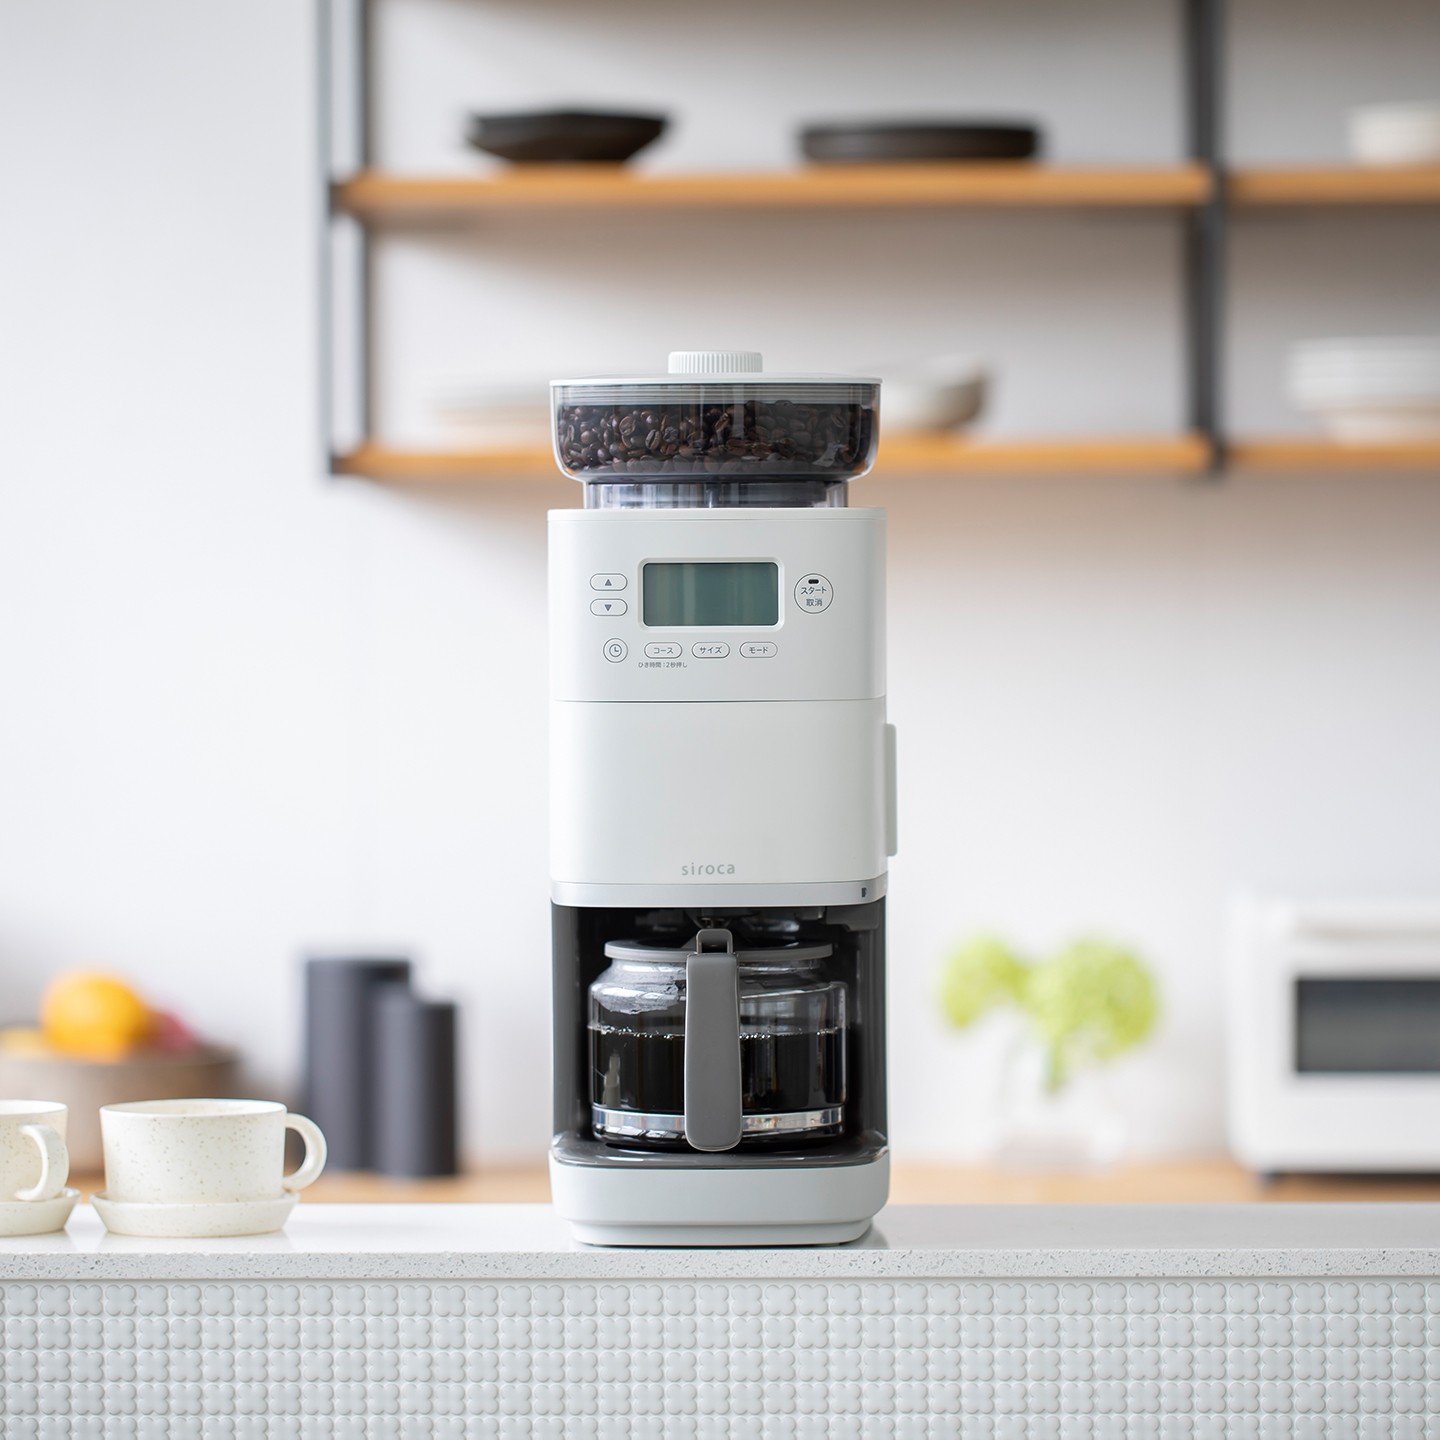 【新品上市】SC-C2510 全自動石臼式研磨咖啡機 淺灰色